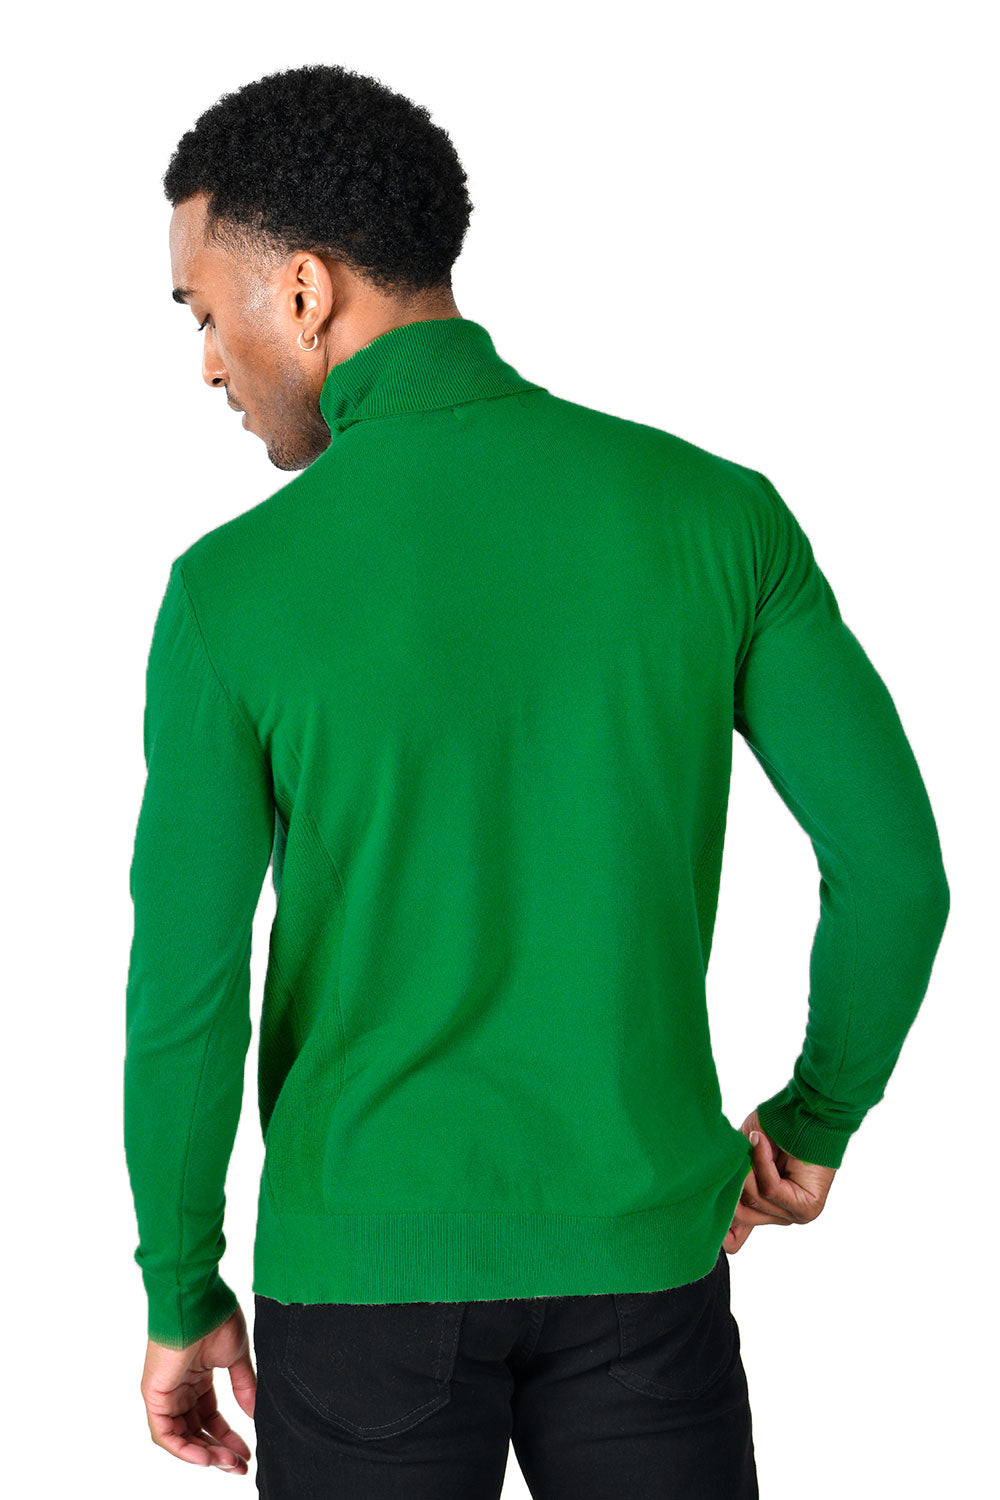 Men's Turtleneck Ribbed Solid Color Basic Sweater LS2100 Emerald